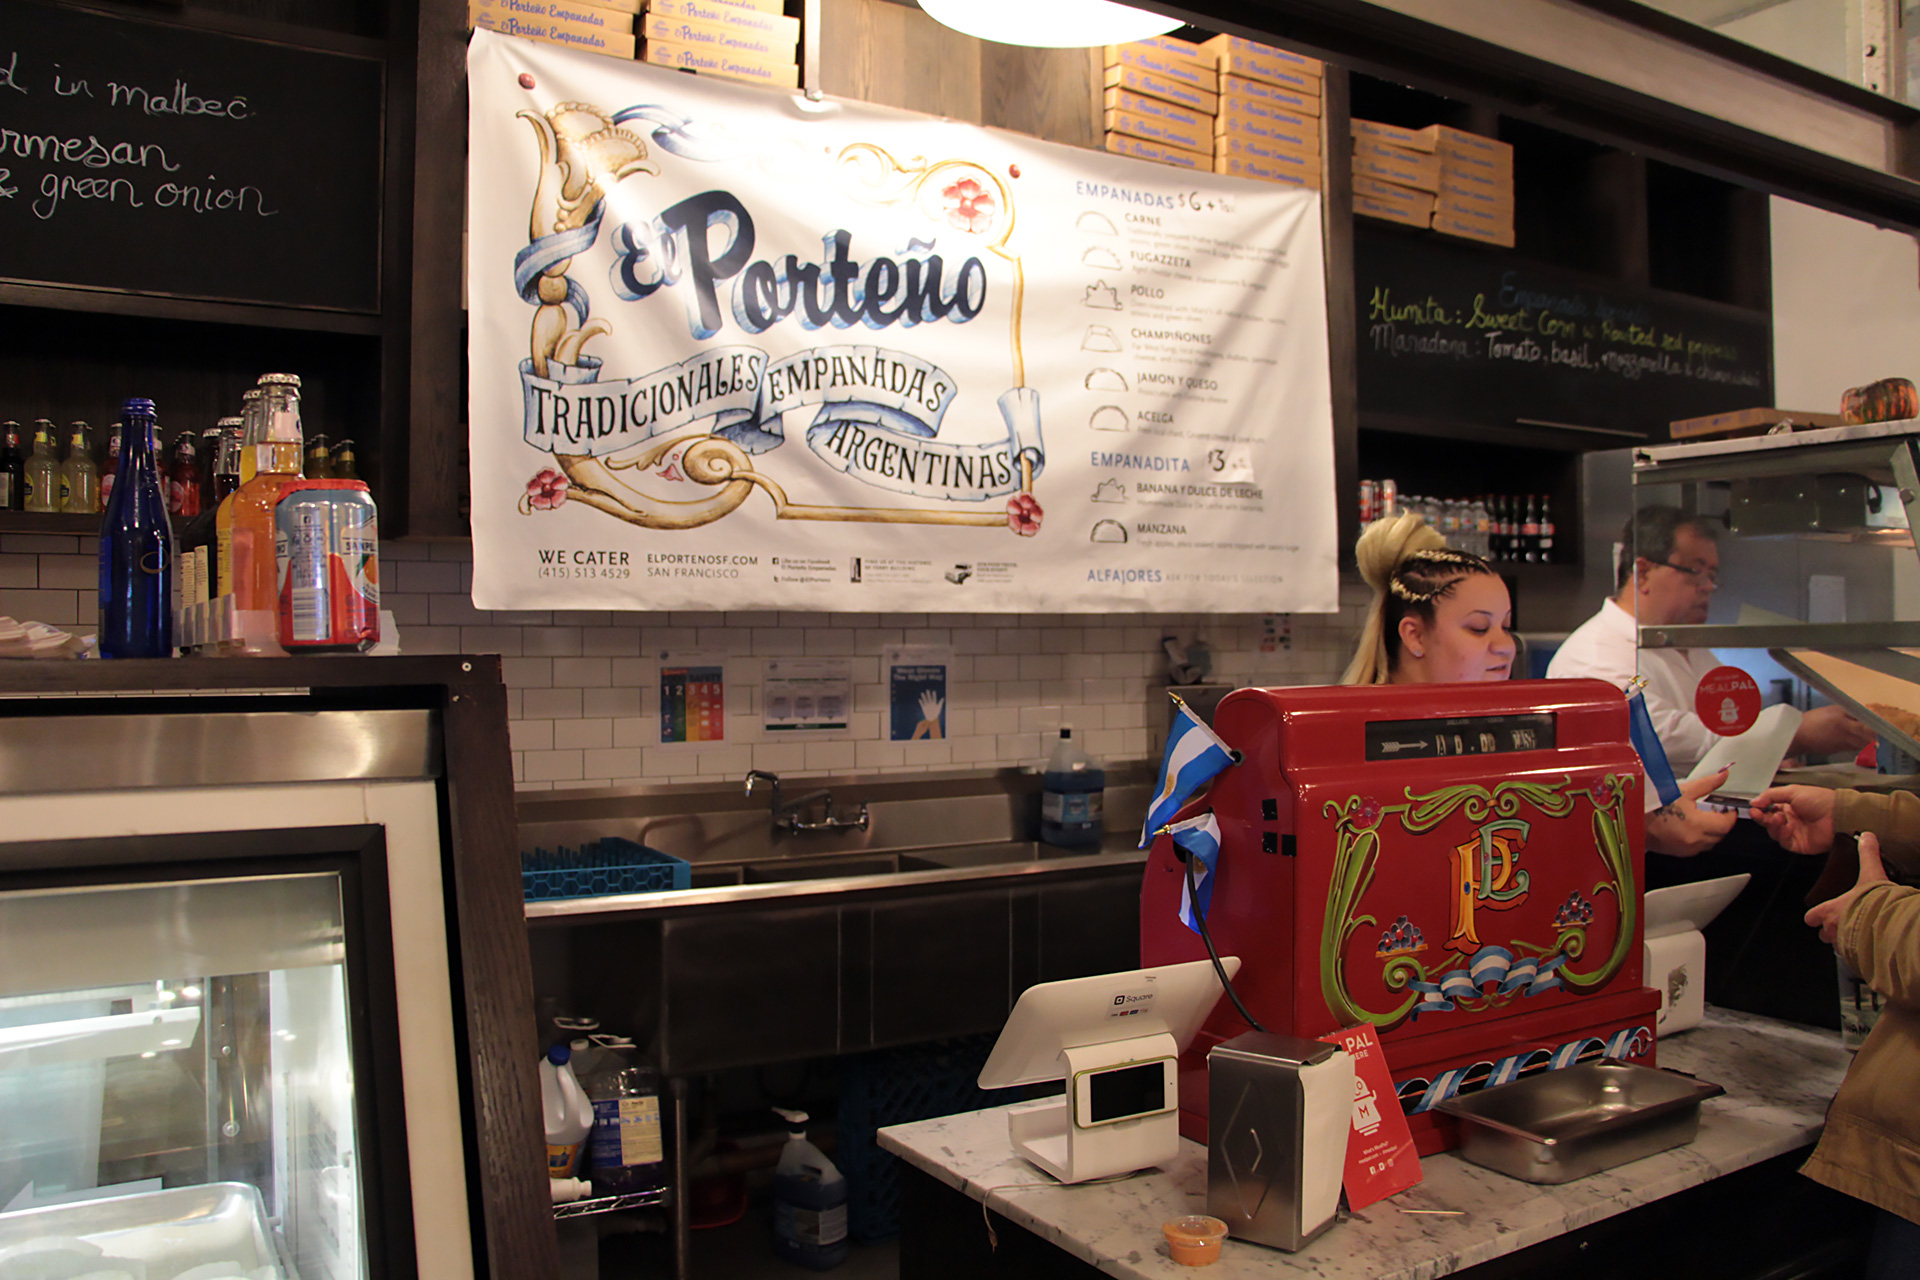 El Porteño counter in Ferry Building